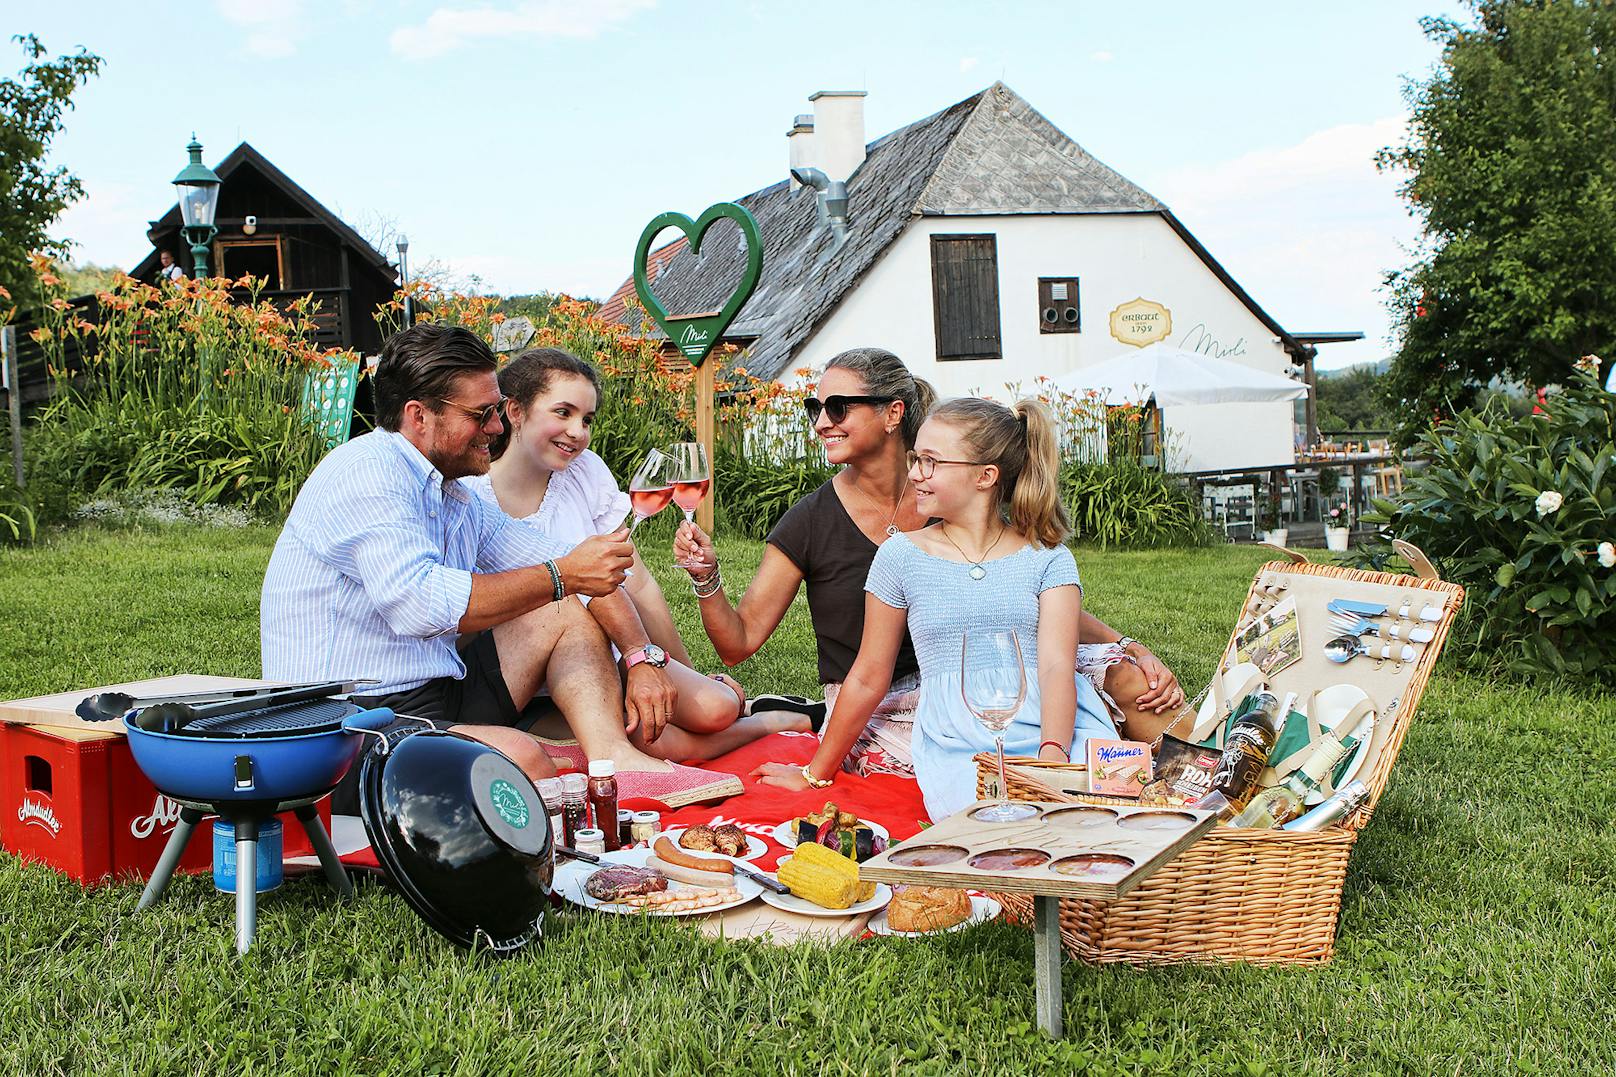 Gewinne ein Feinschmecker-Grillpaket für zwei Personen und genieße ein Picknick auf einem der schönsten Plätze im Wienerwald.